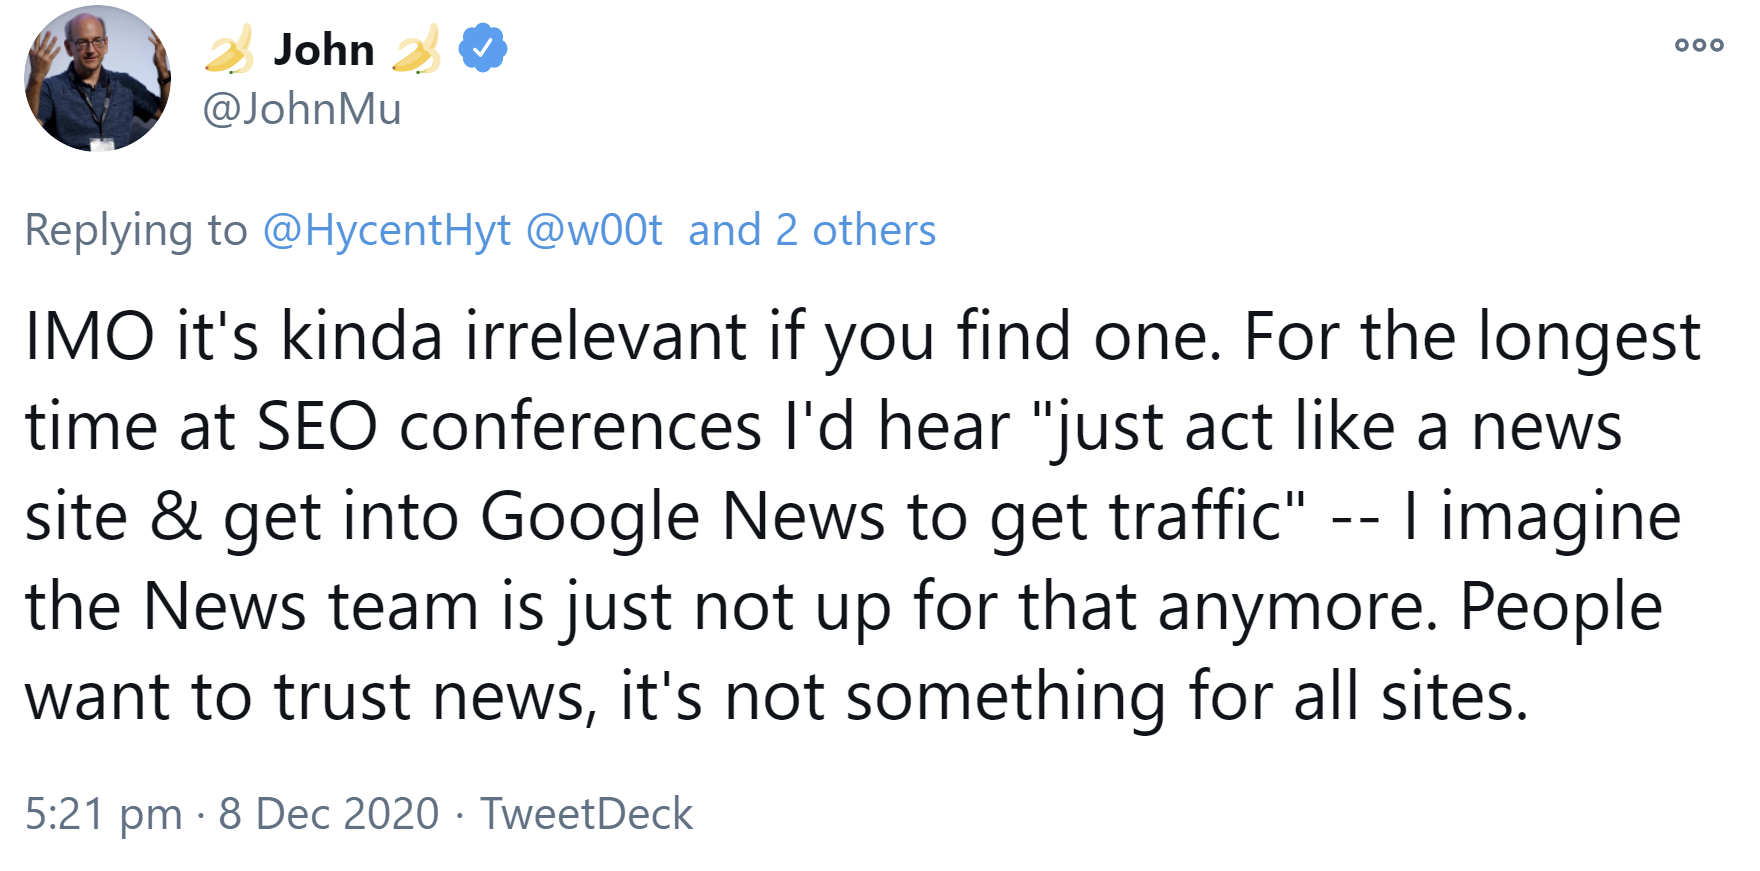 Ist es für Websites schwieriger geworden, in Google News aufgenommen zu werden?